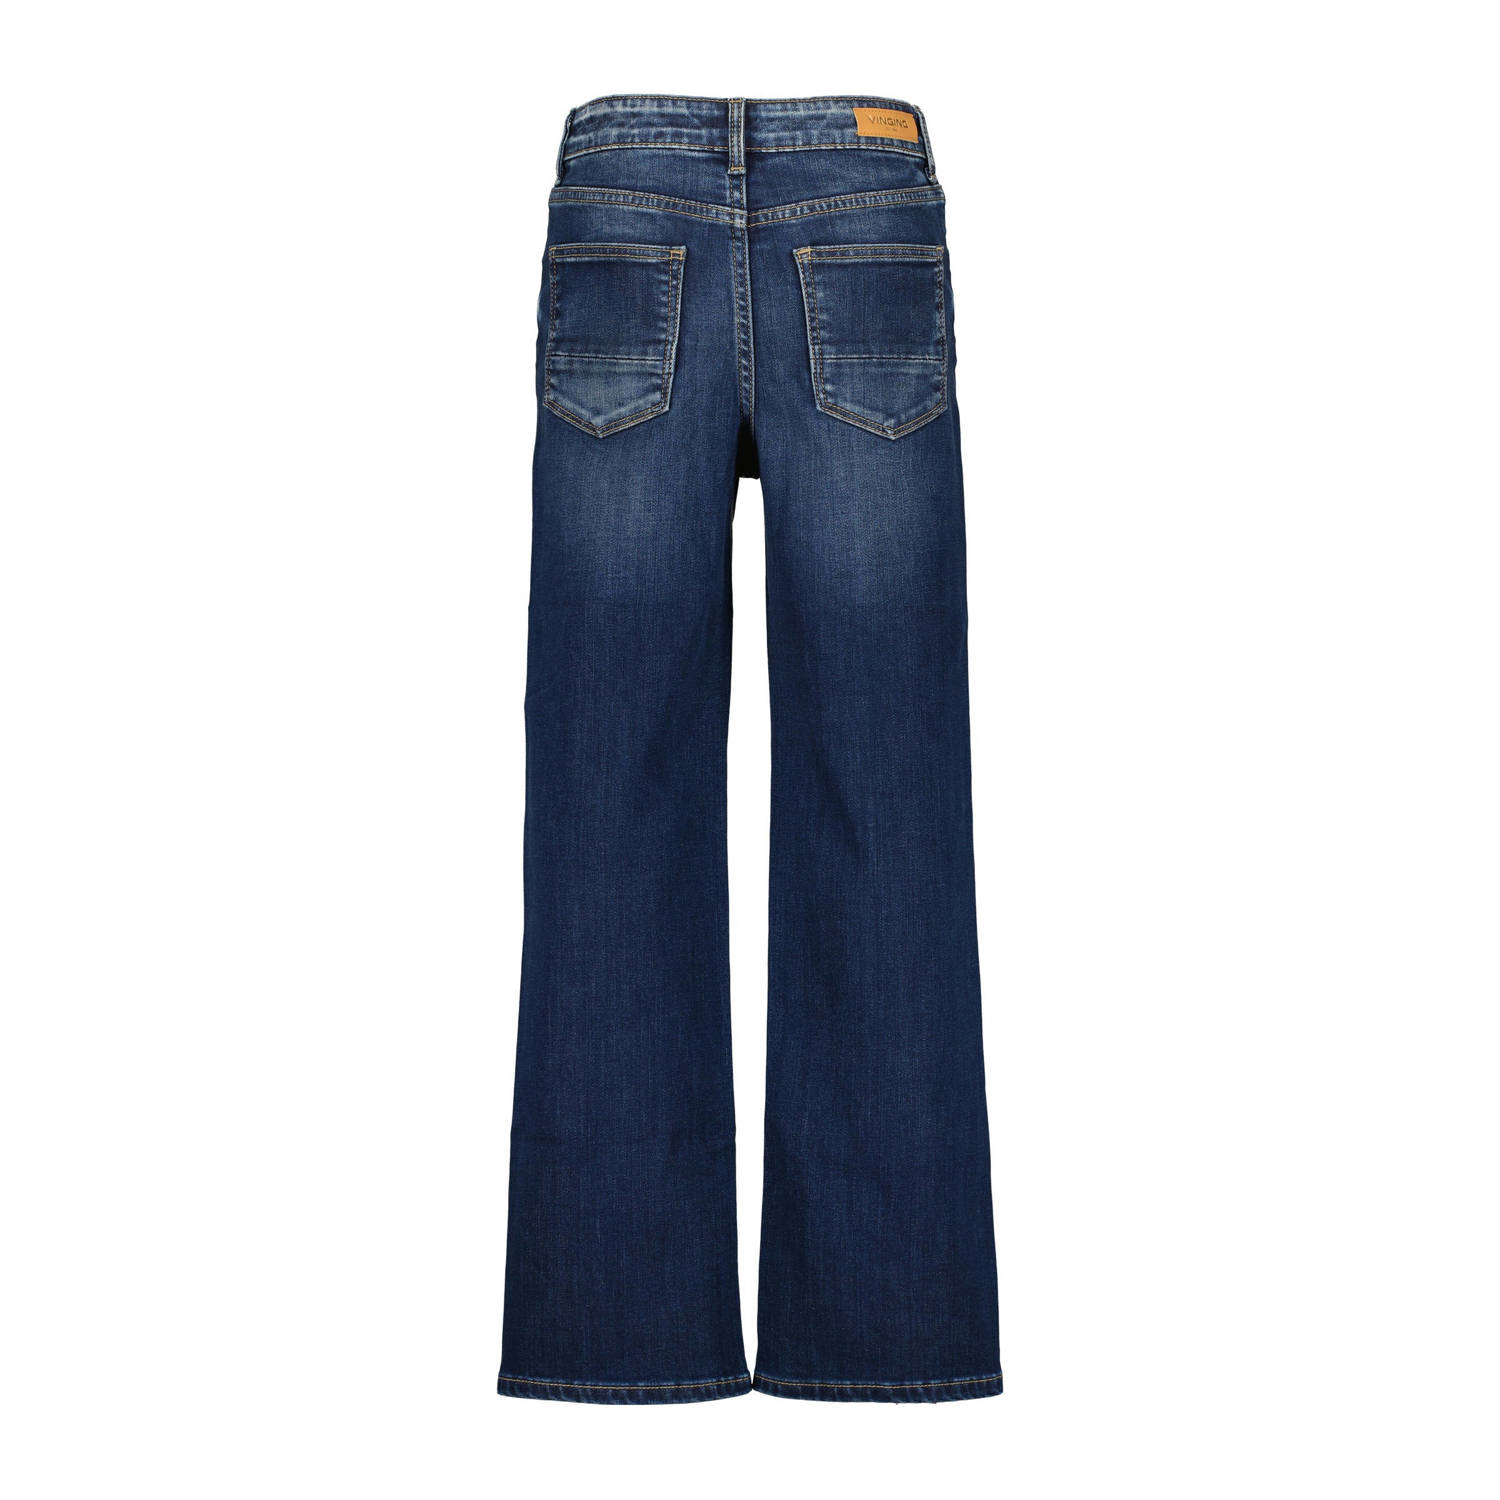 Vingino high waist loose fit jeans GIULIA dark used